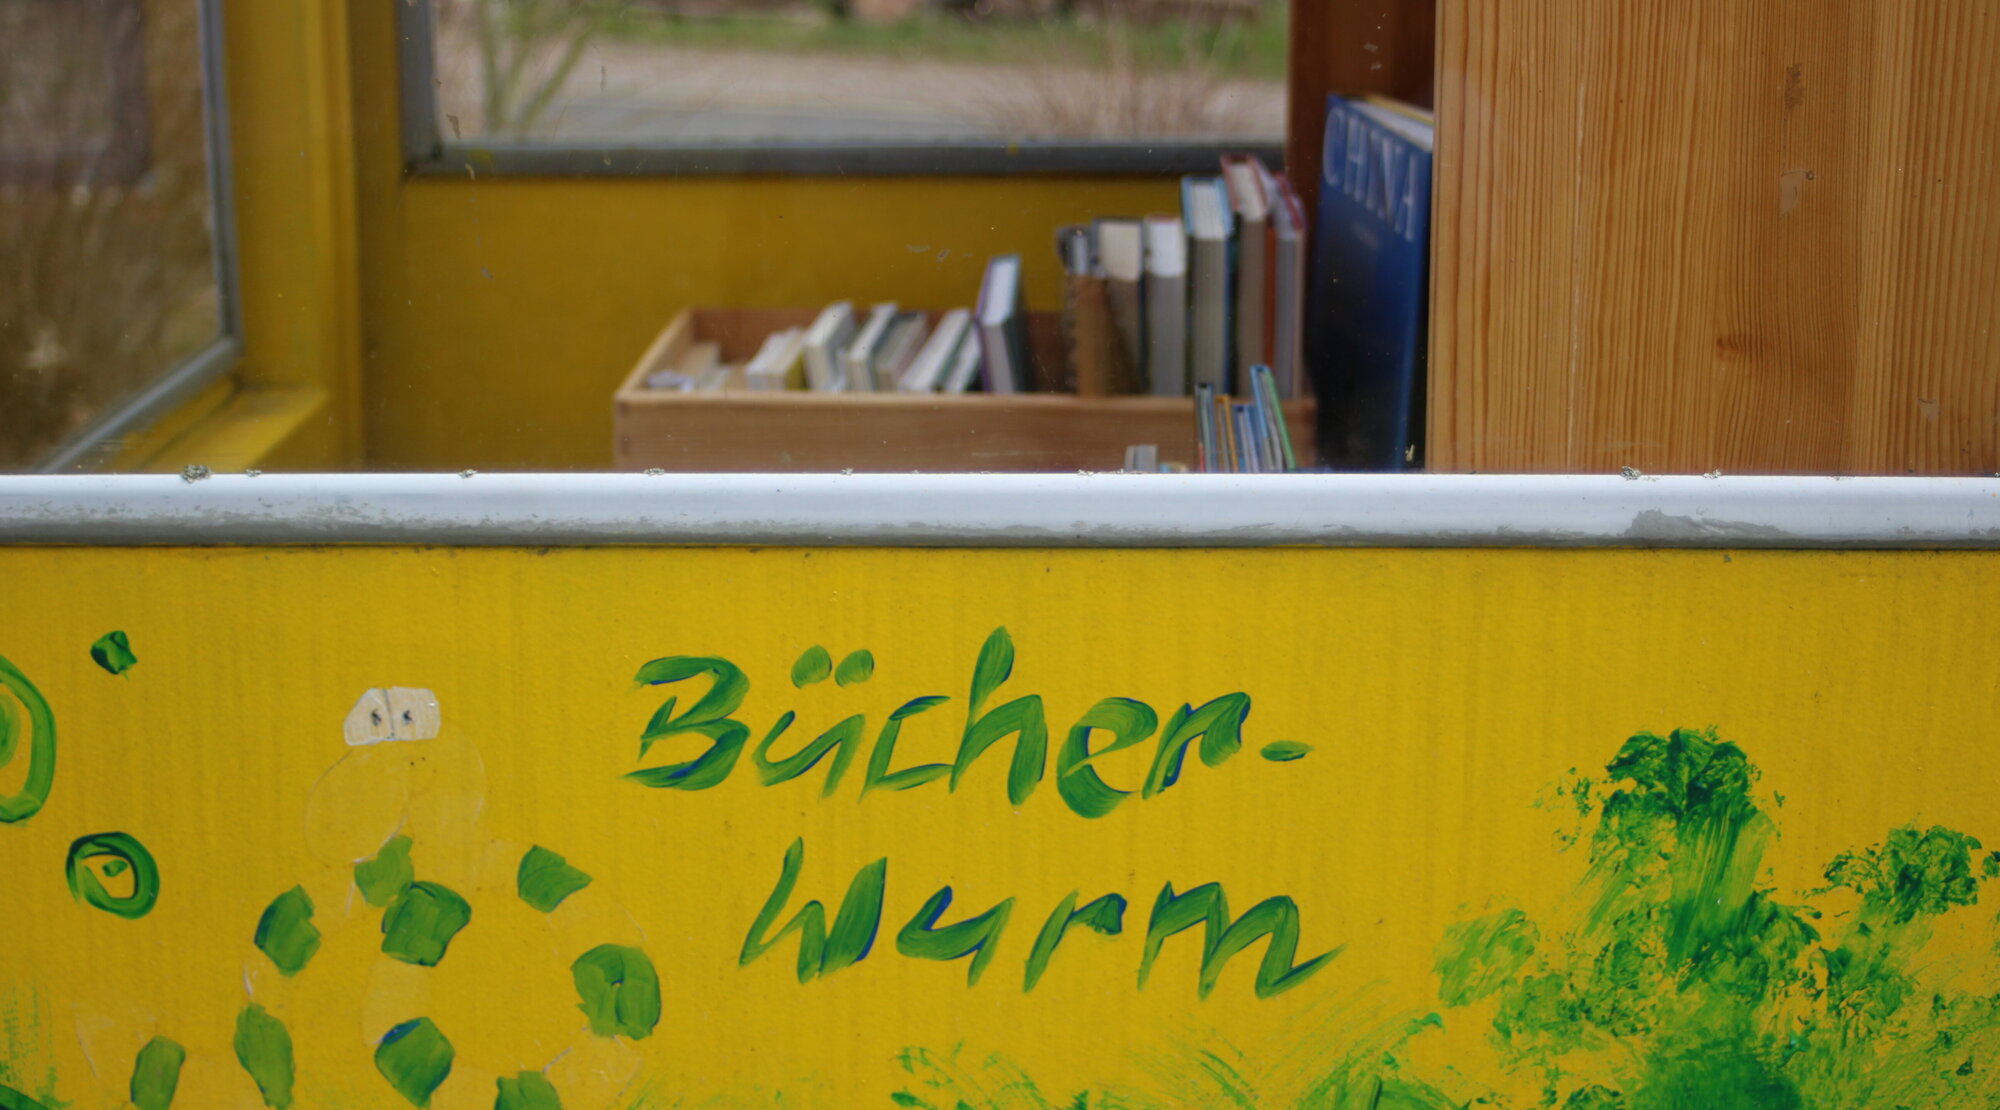 Ausschnitt der Bücherzelle mit der Aufschrift "Bücherwurm"